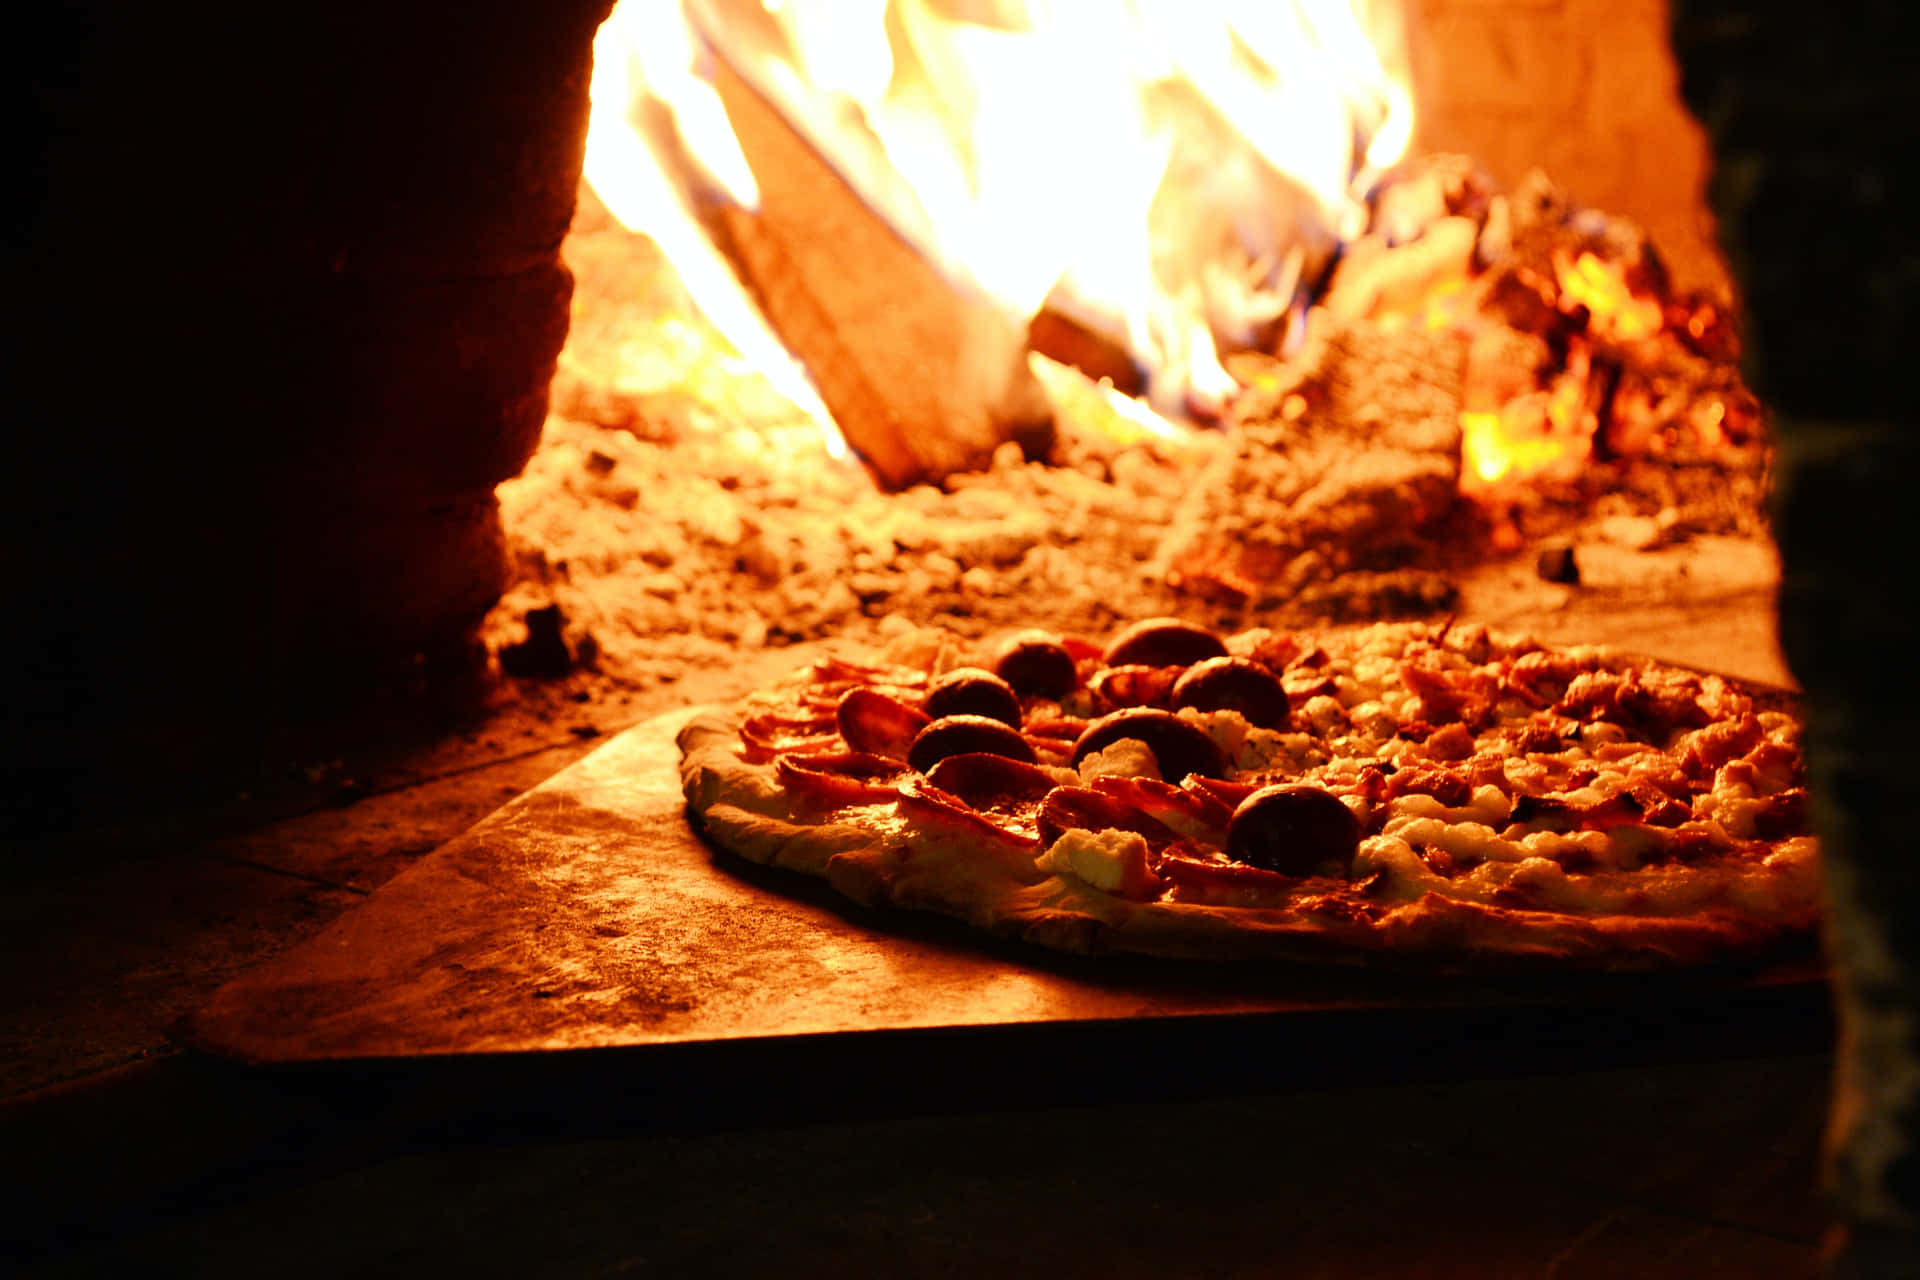 Verwöhnensie Ihren Gaumen Mit Unseren Köstlichen Kreationen Von Pizza Hut!